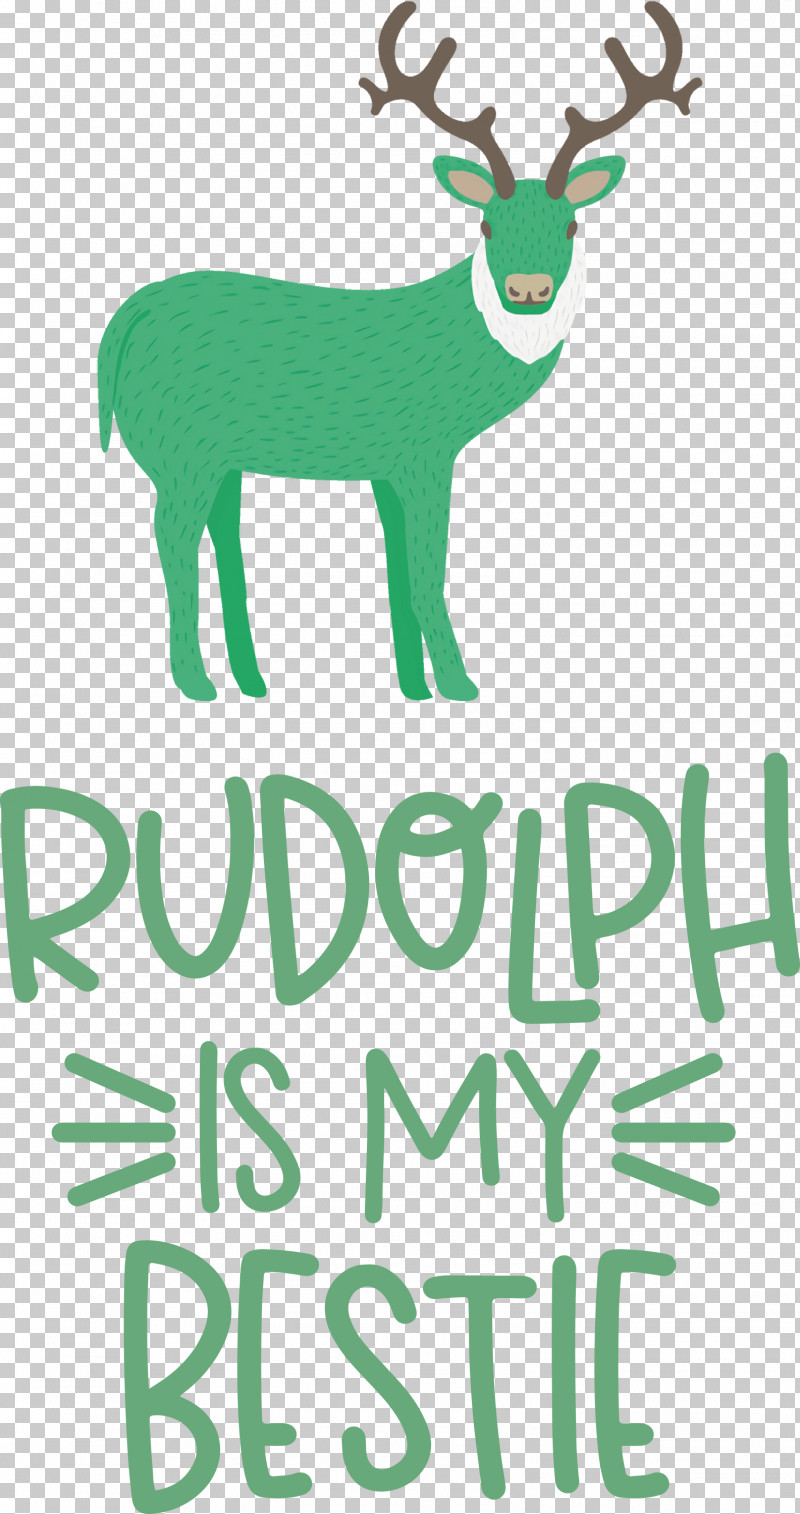 Rudolph Is My Bestie Rudolph Deer PNG, Clipart, Antler, Biology, Christmas, Deer, Green Free PNG Download